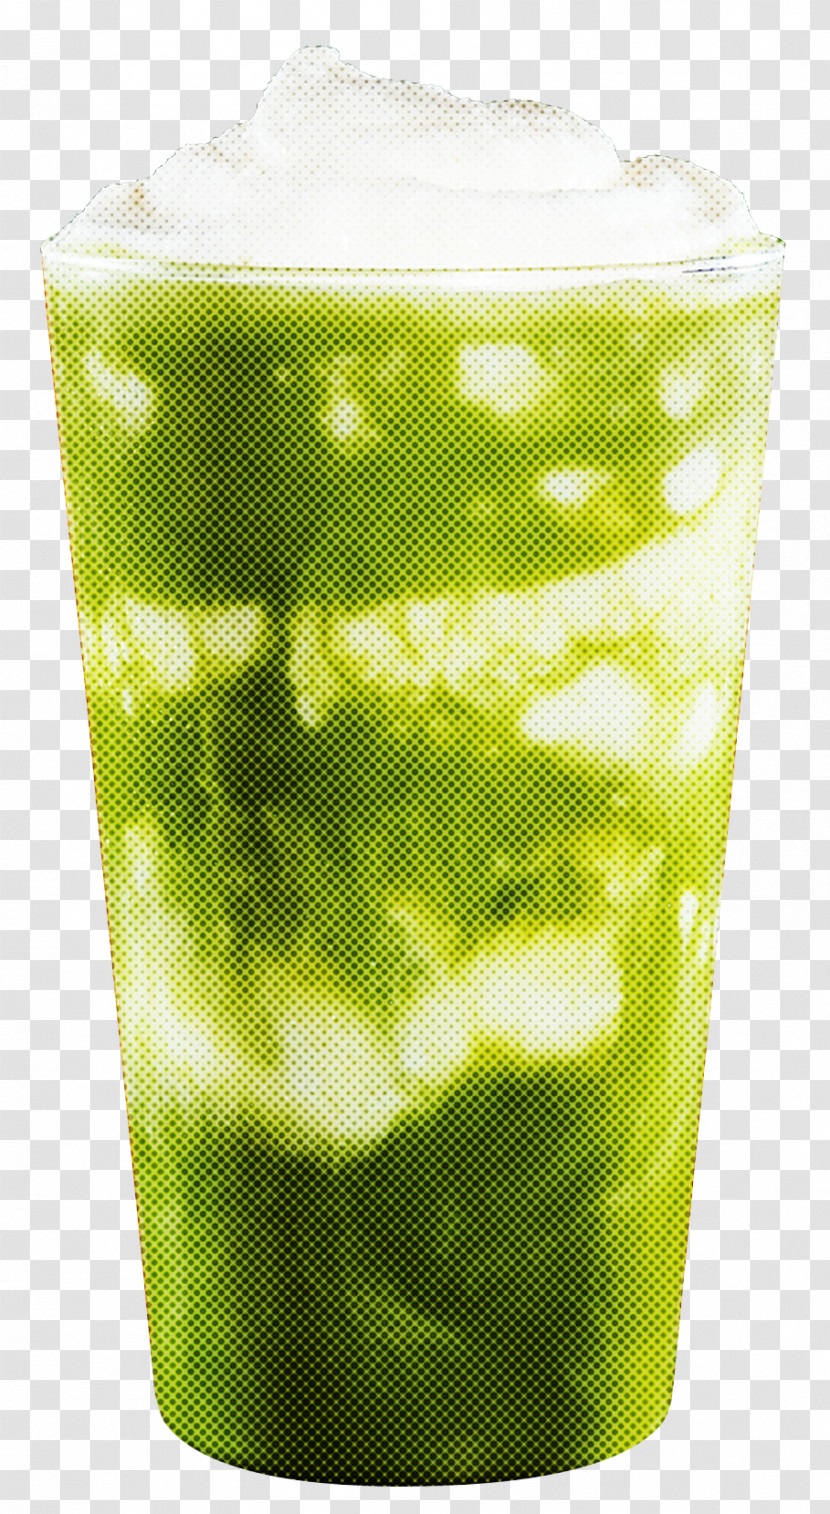 Lemon Juice Transparent PNG